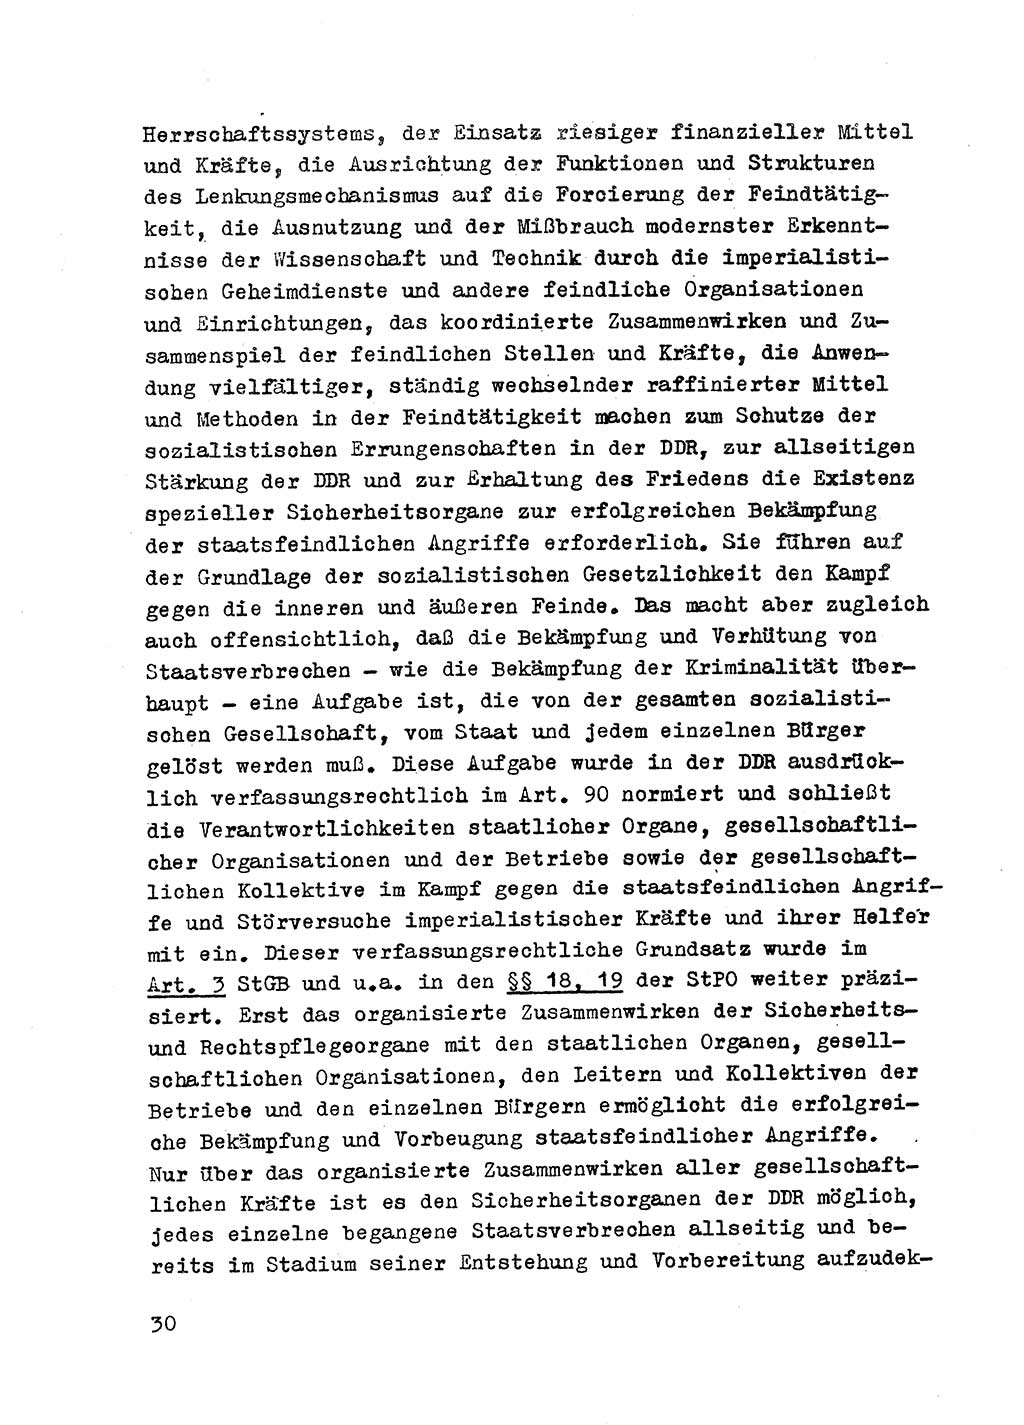 Strafrecht der DDR (Deutsche Demokratische Republik), Besonderer Teil, Lehrmaterial, Heft 2 1969, Seite 30 (Strafr. DDR BT Lehrmat. H. 2 1969, S. 30)